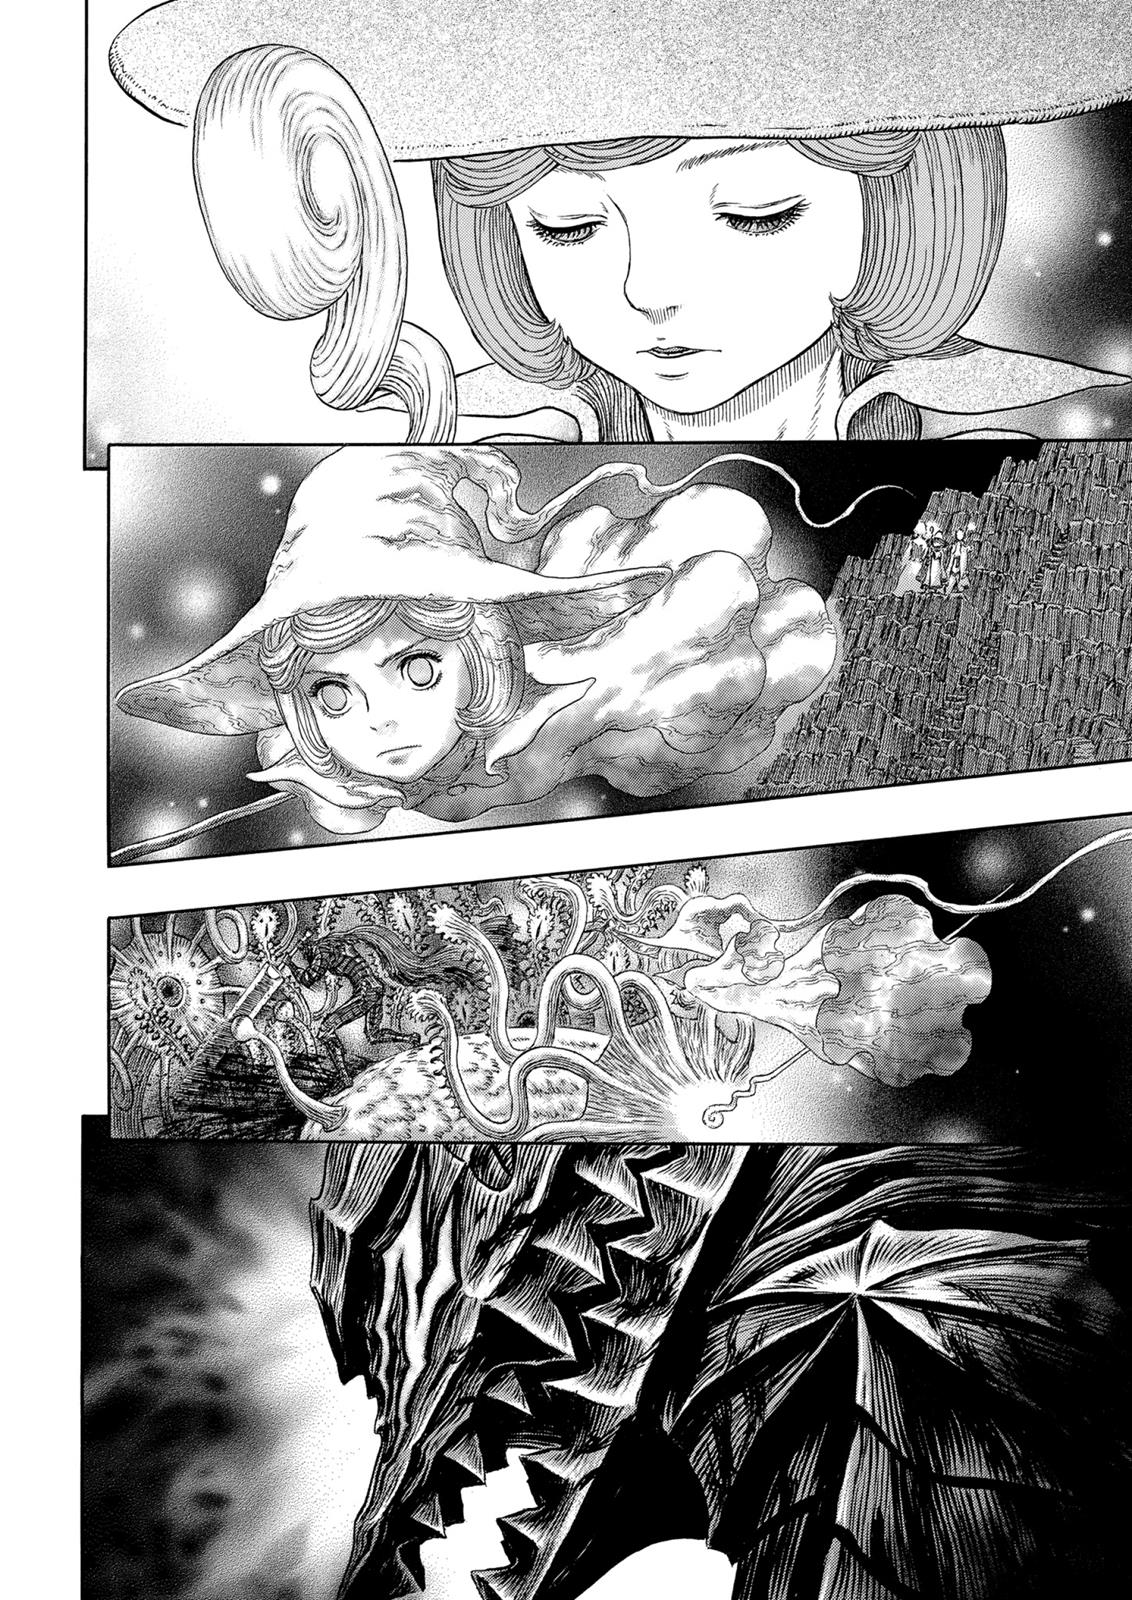 Berserk Manga Chapter 316 image 20